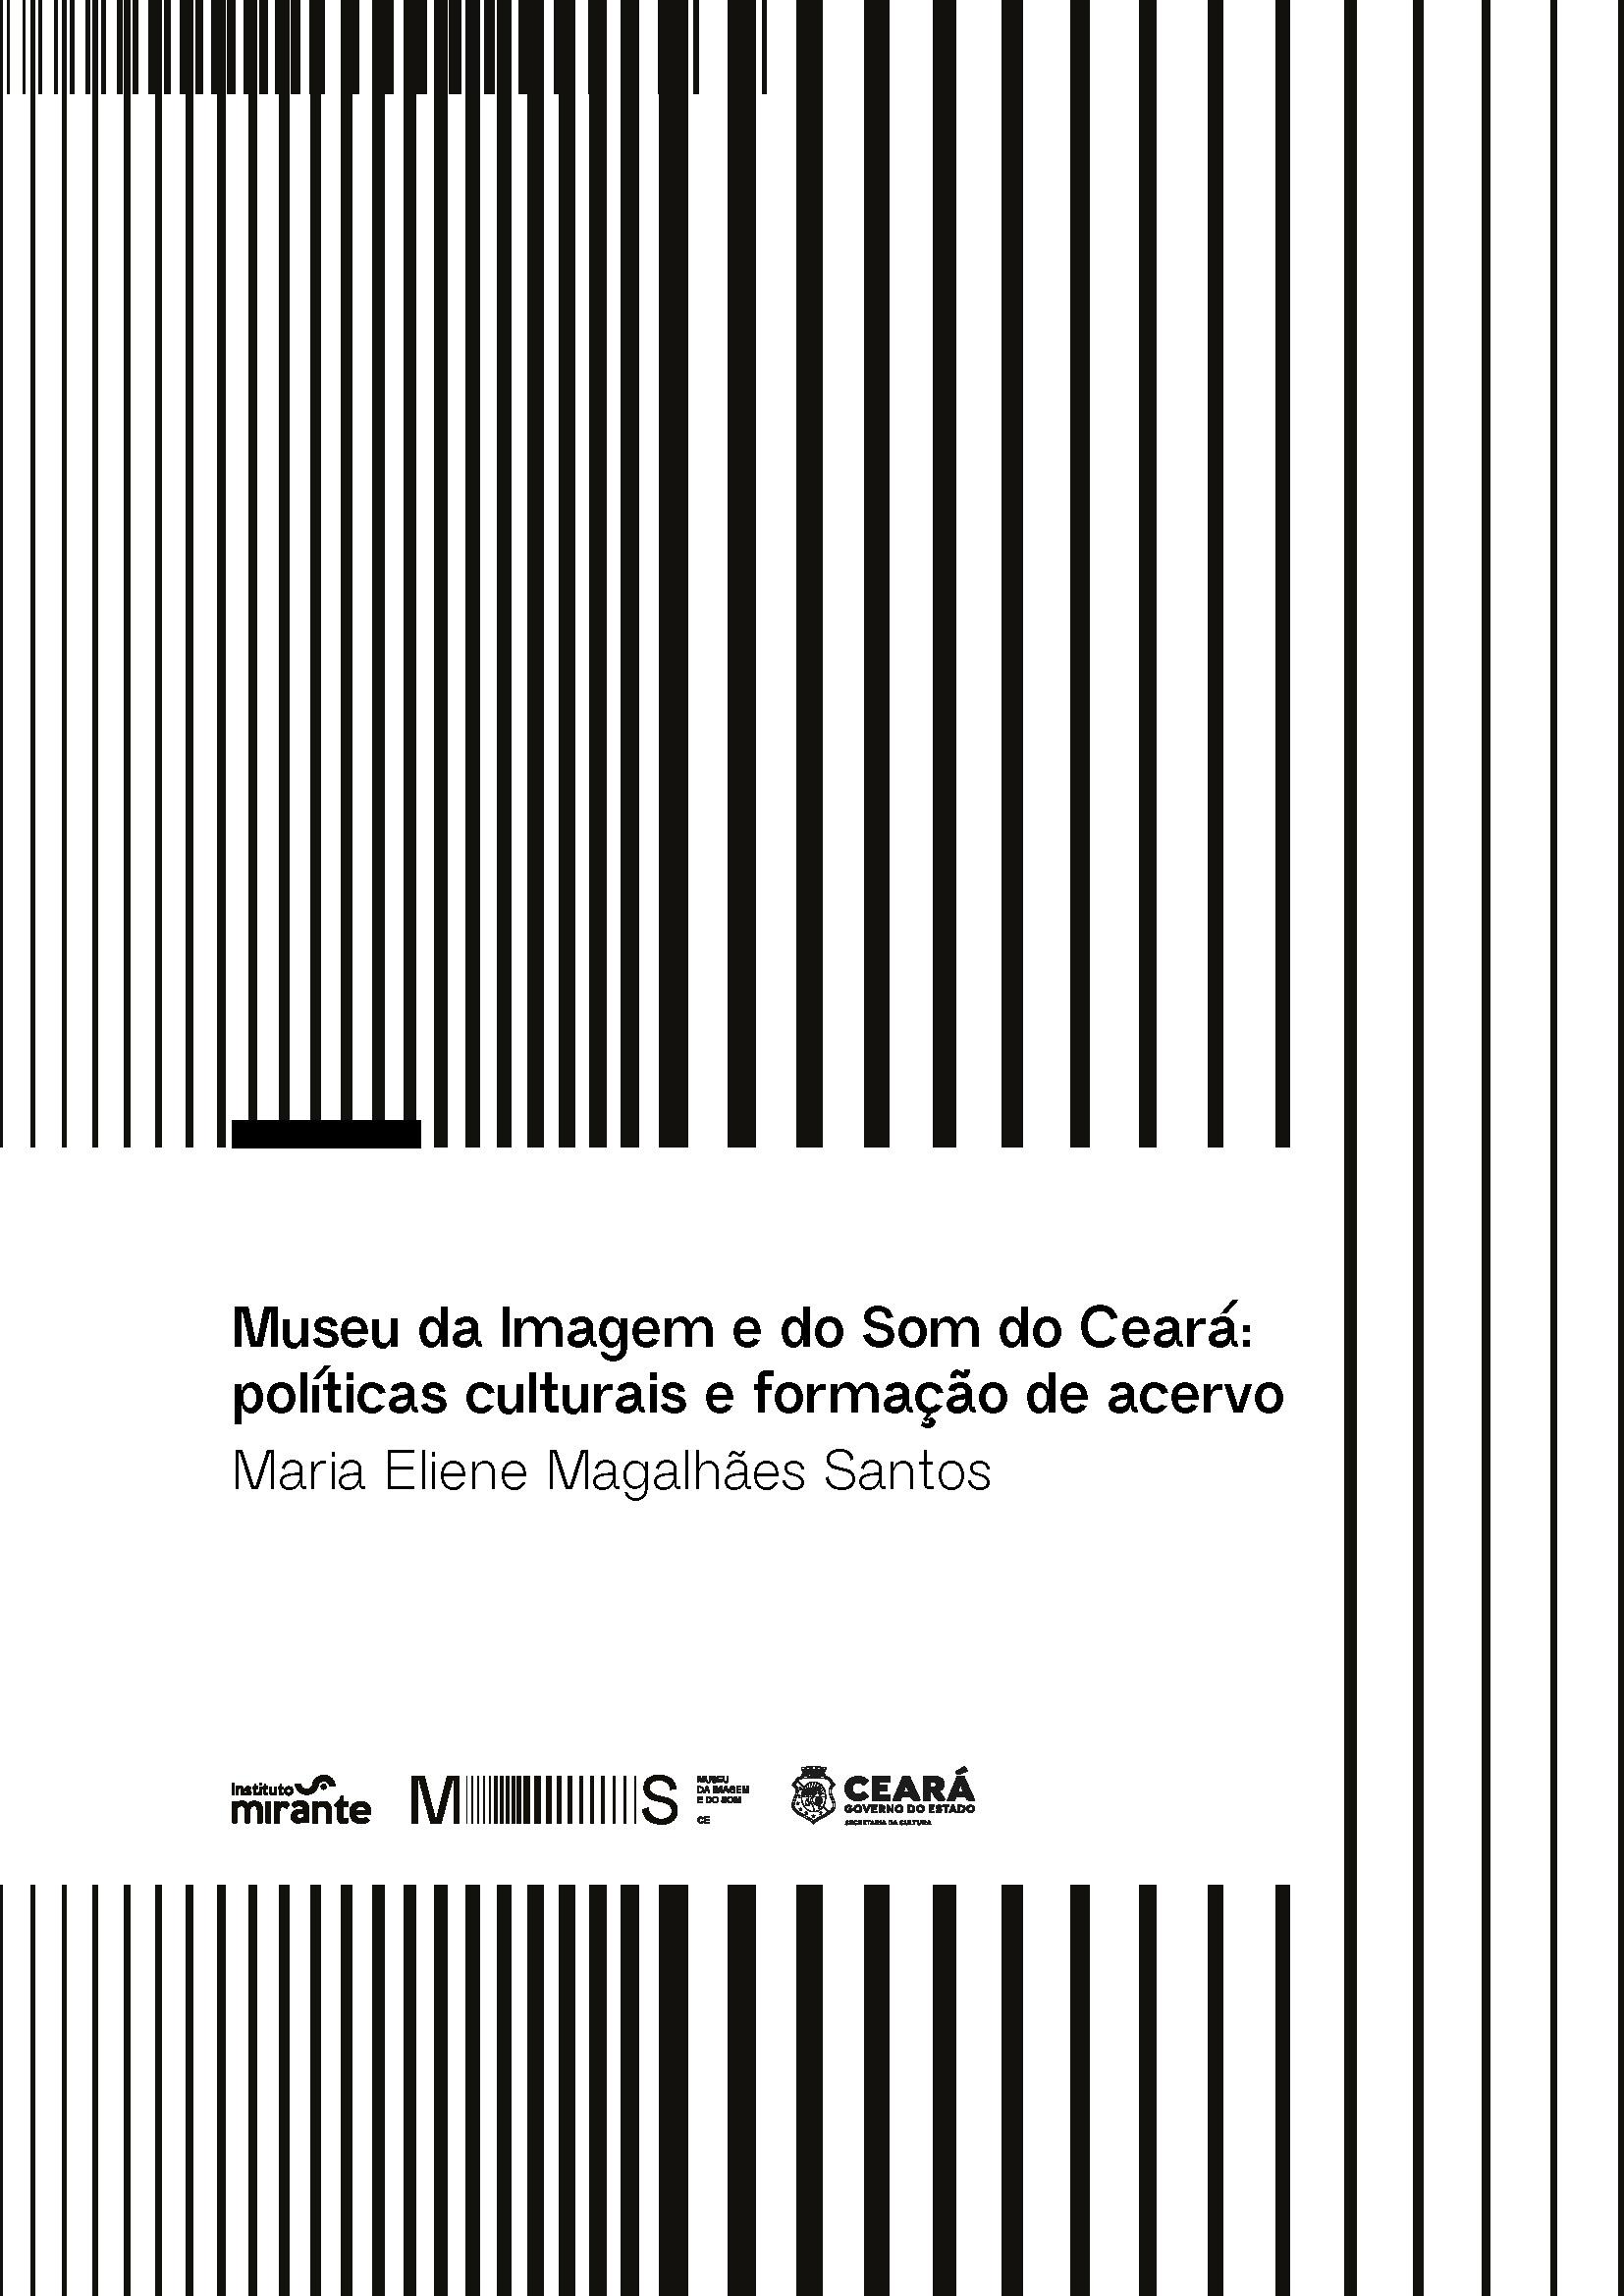 Museu da Imagem e do Som do Ceará: políticas culturais e formação de acervo